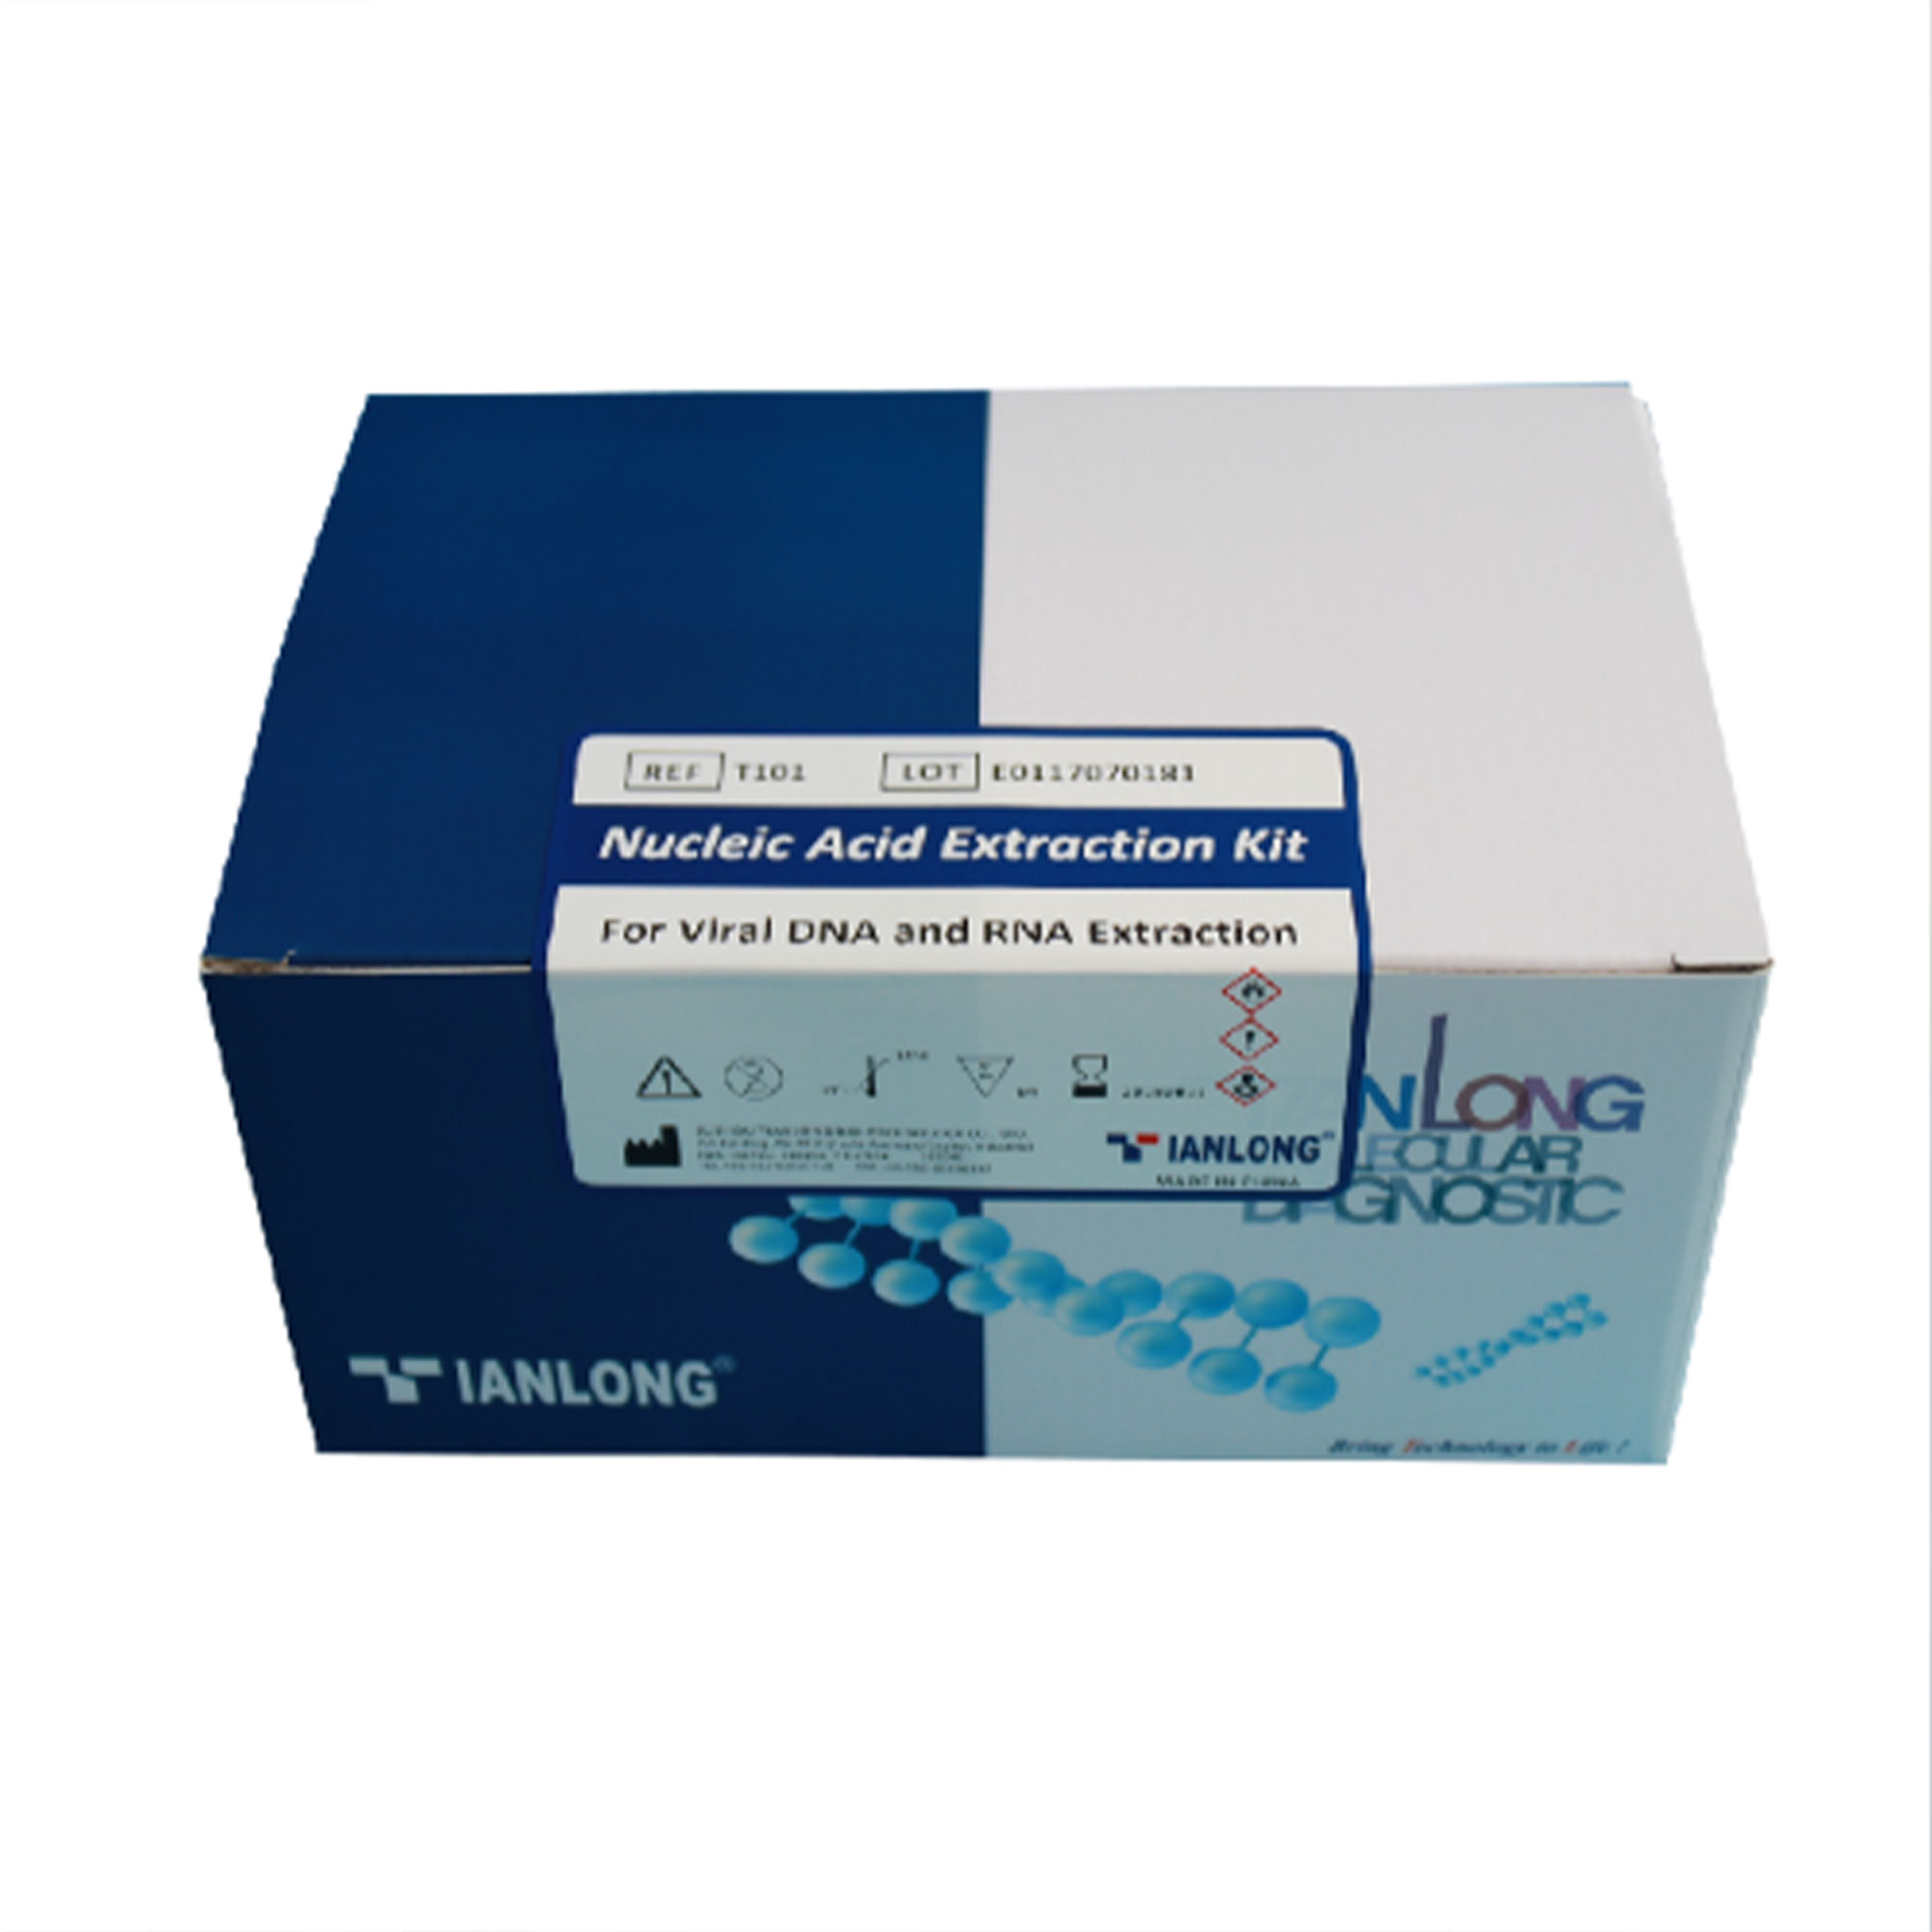 ; کیت  استخراج  آمونیتیک - 20 تستی  - Amniotic-Fluid DNA Extraction Kit 20Test - TIANLONG  - کیت - سلولی و مولکولی - گروه آزمایشگاهی پادینا ویستا